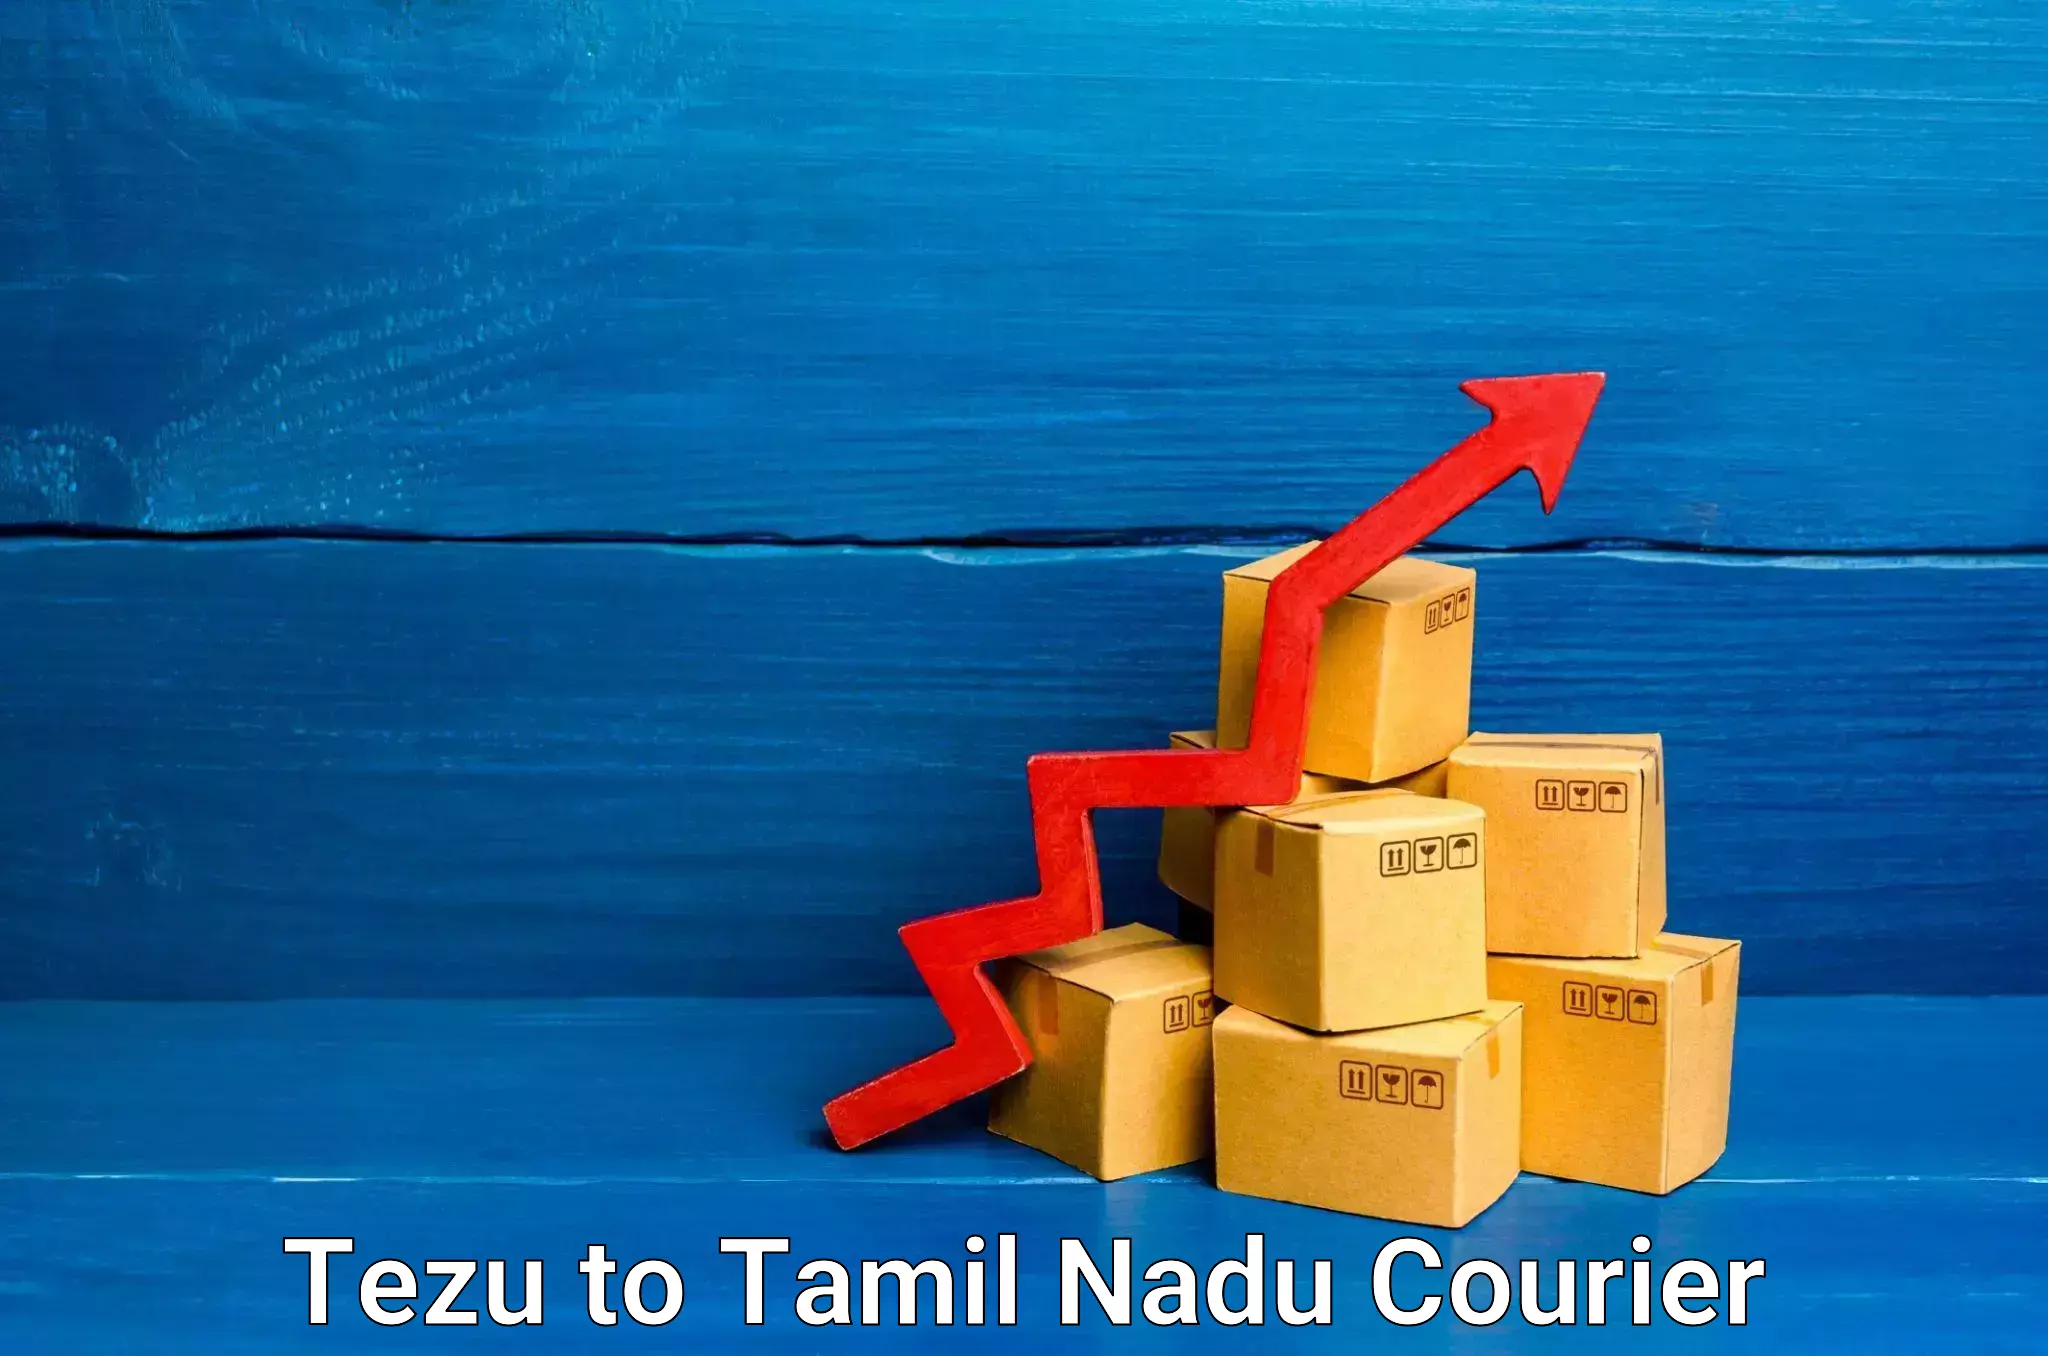 Specialized shipment handling Tezu to Tamil Nadu